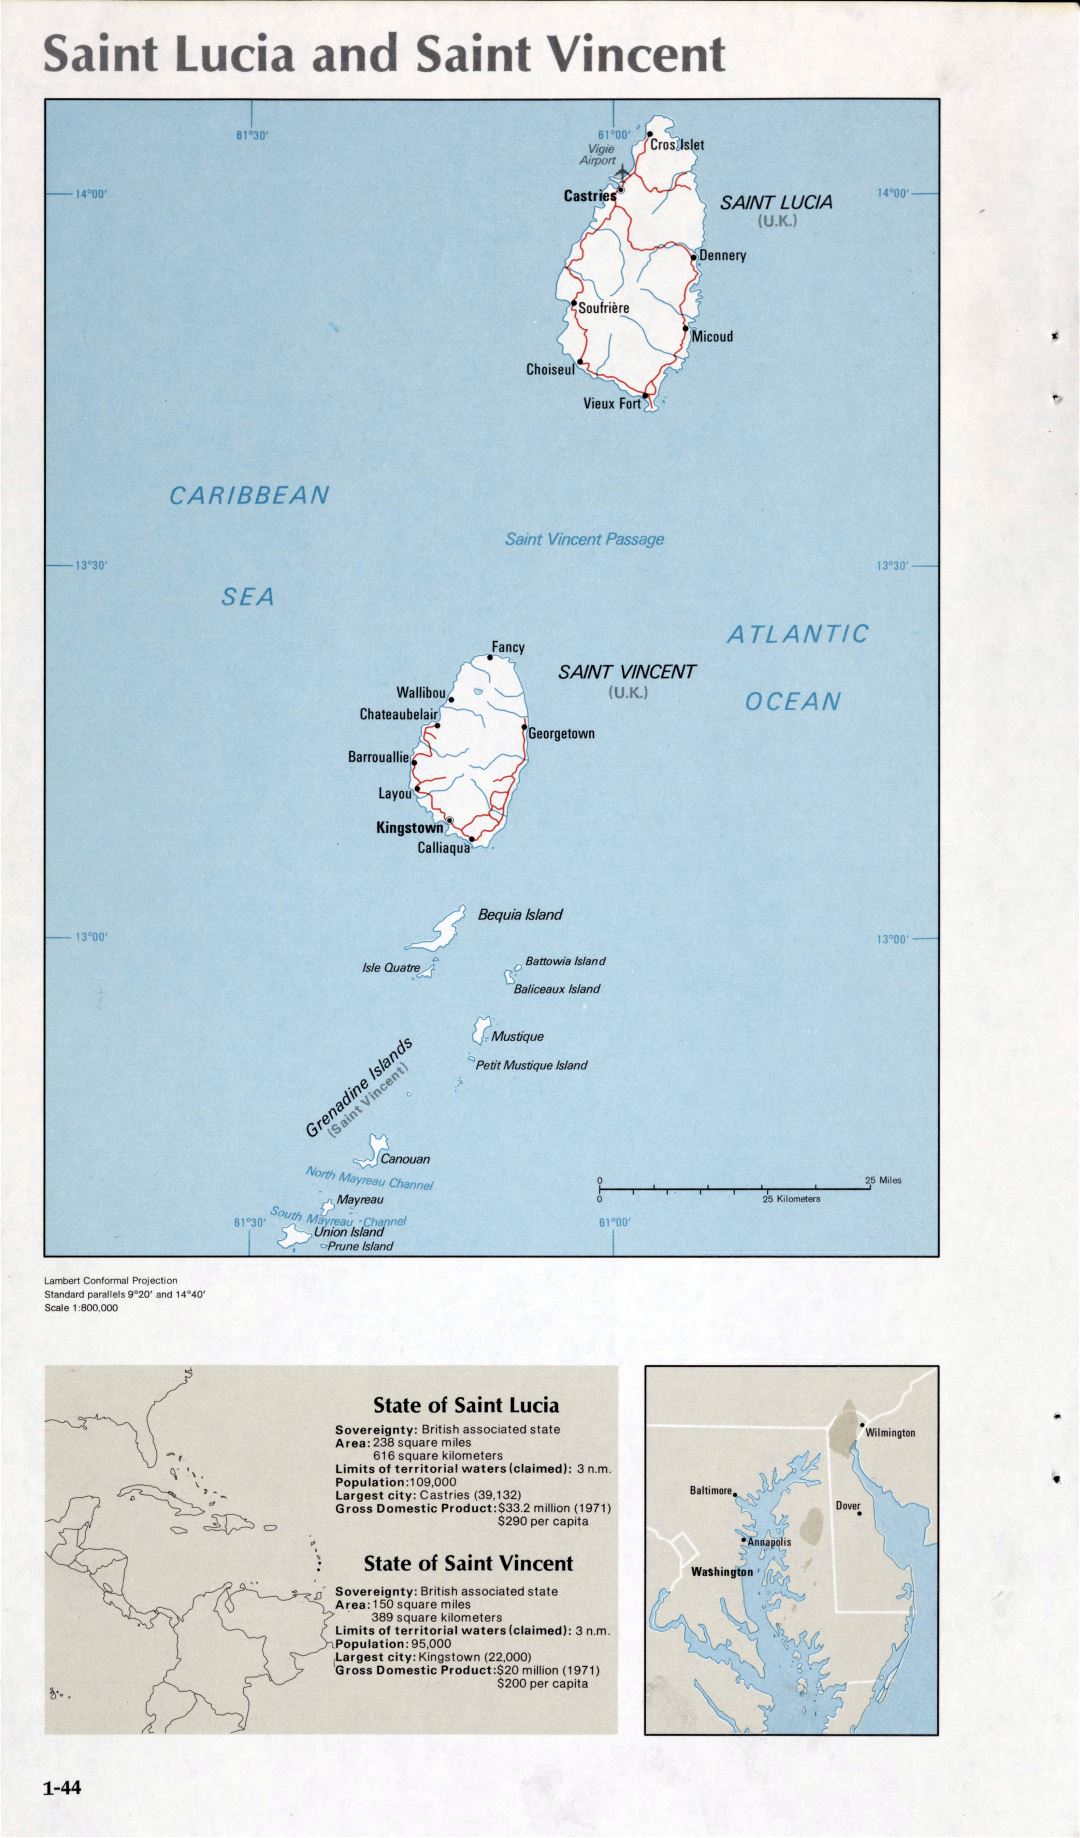 Map of Saint Lucia and Saint Vincent (1-44)